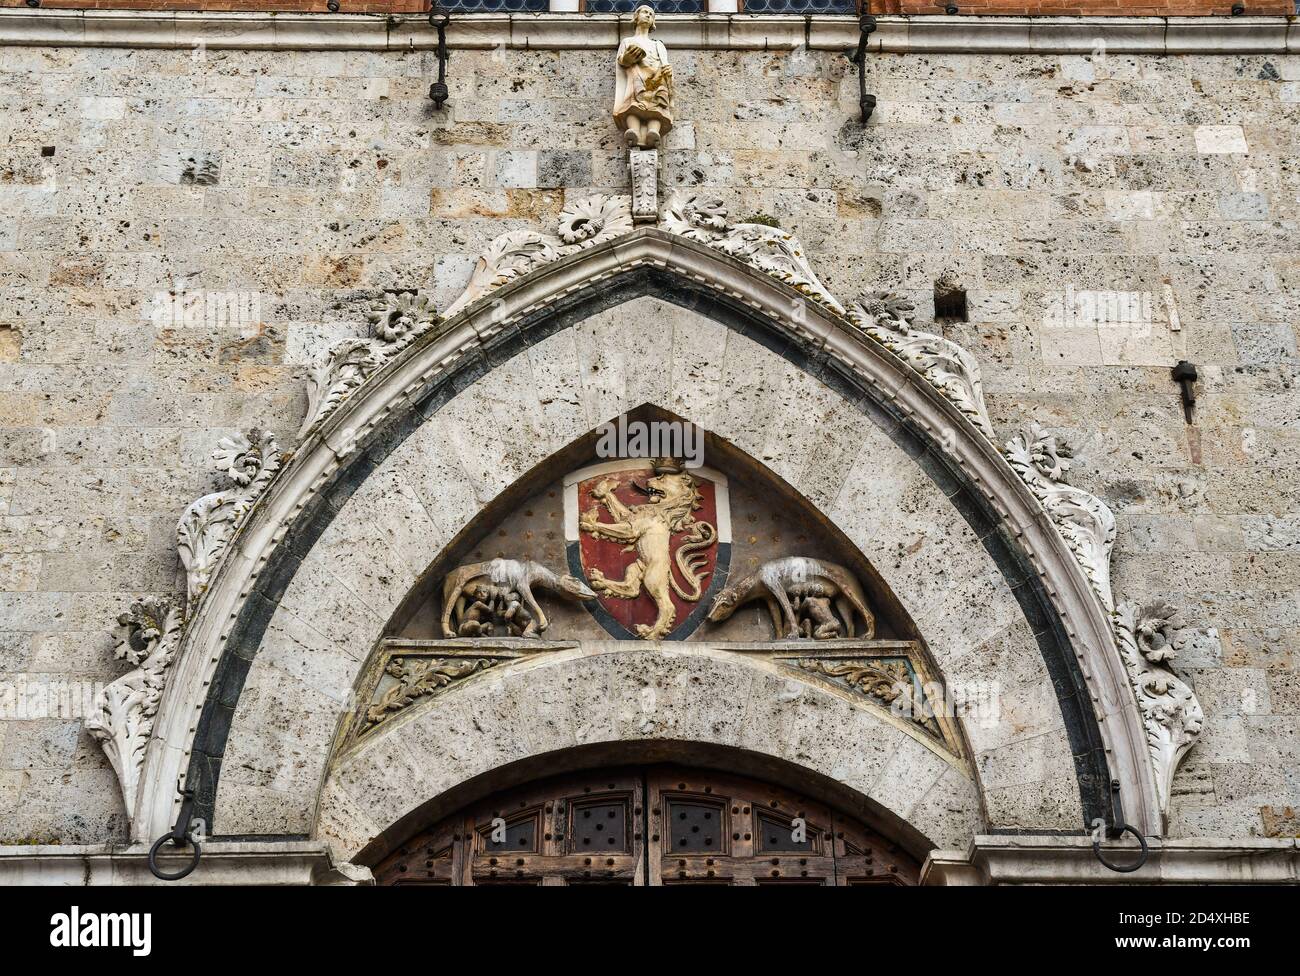 Portail voûté du Palazzo Pubblico sur la Piazza del Campo avec le Sienese et le loup Capitolin sur les côtés des armoiries, Sienne, Toscane, Italie Banque D'Images